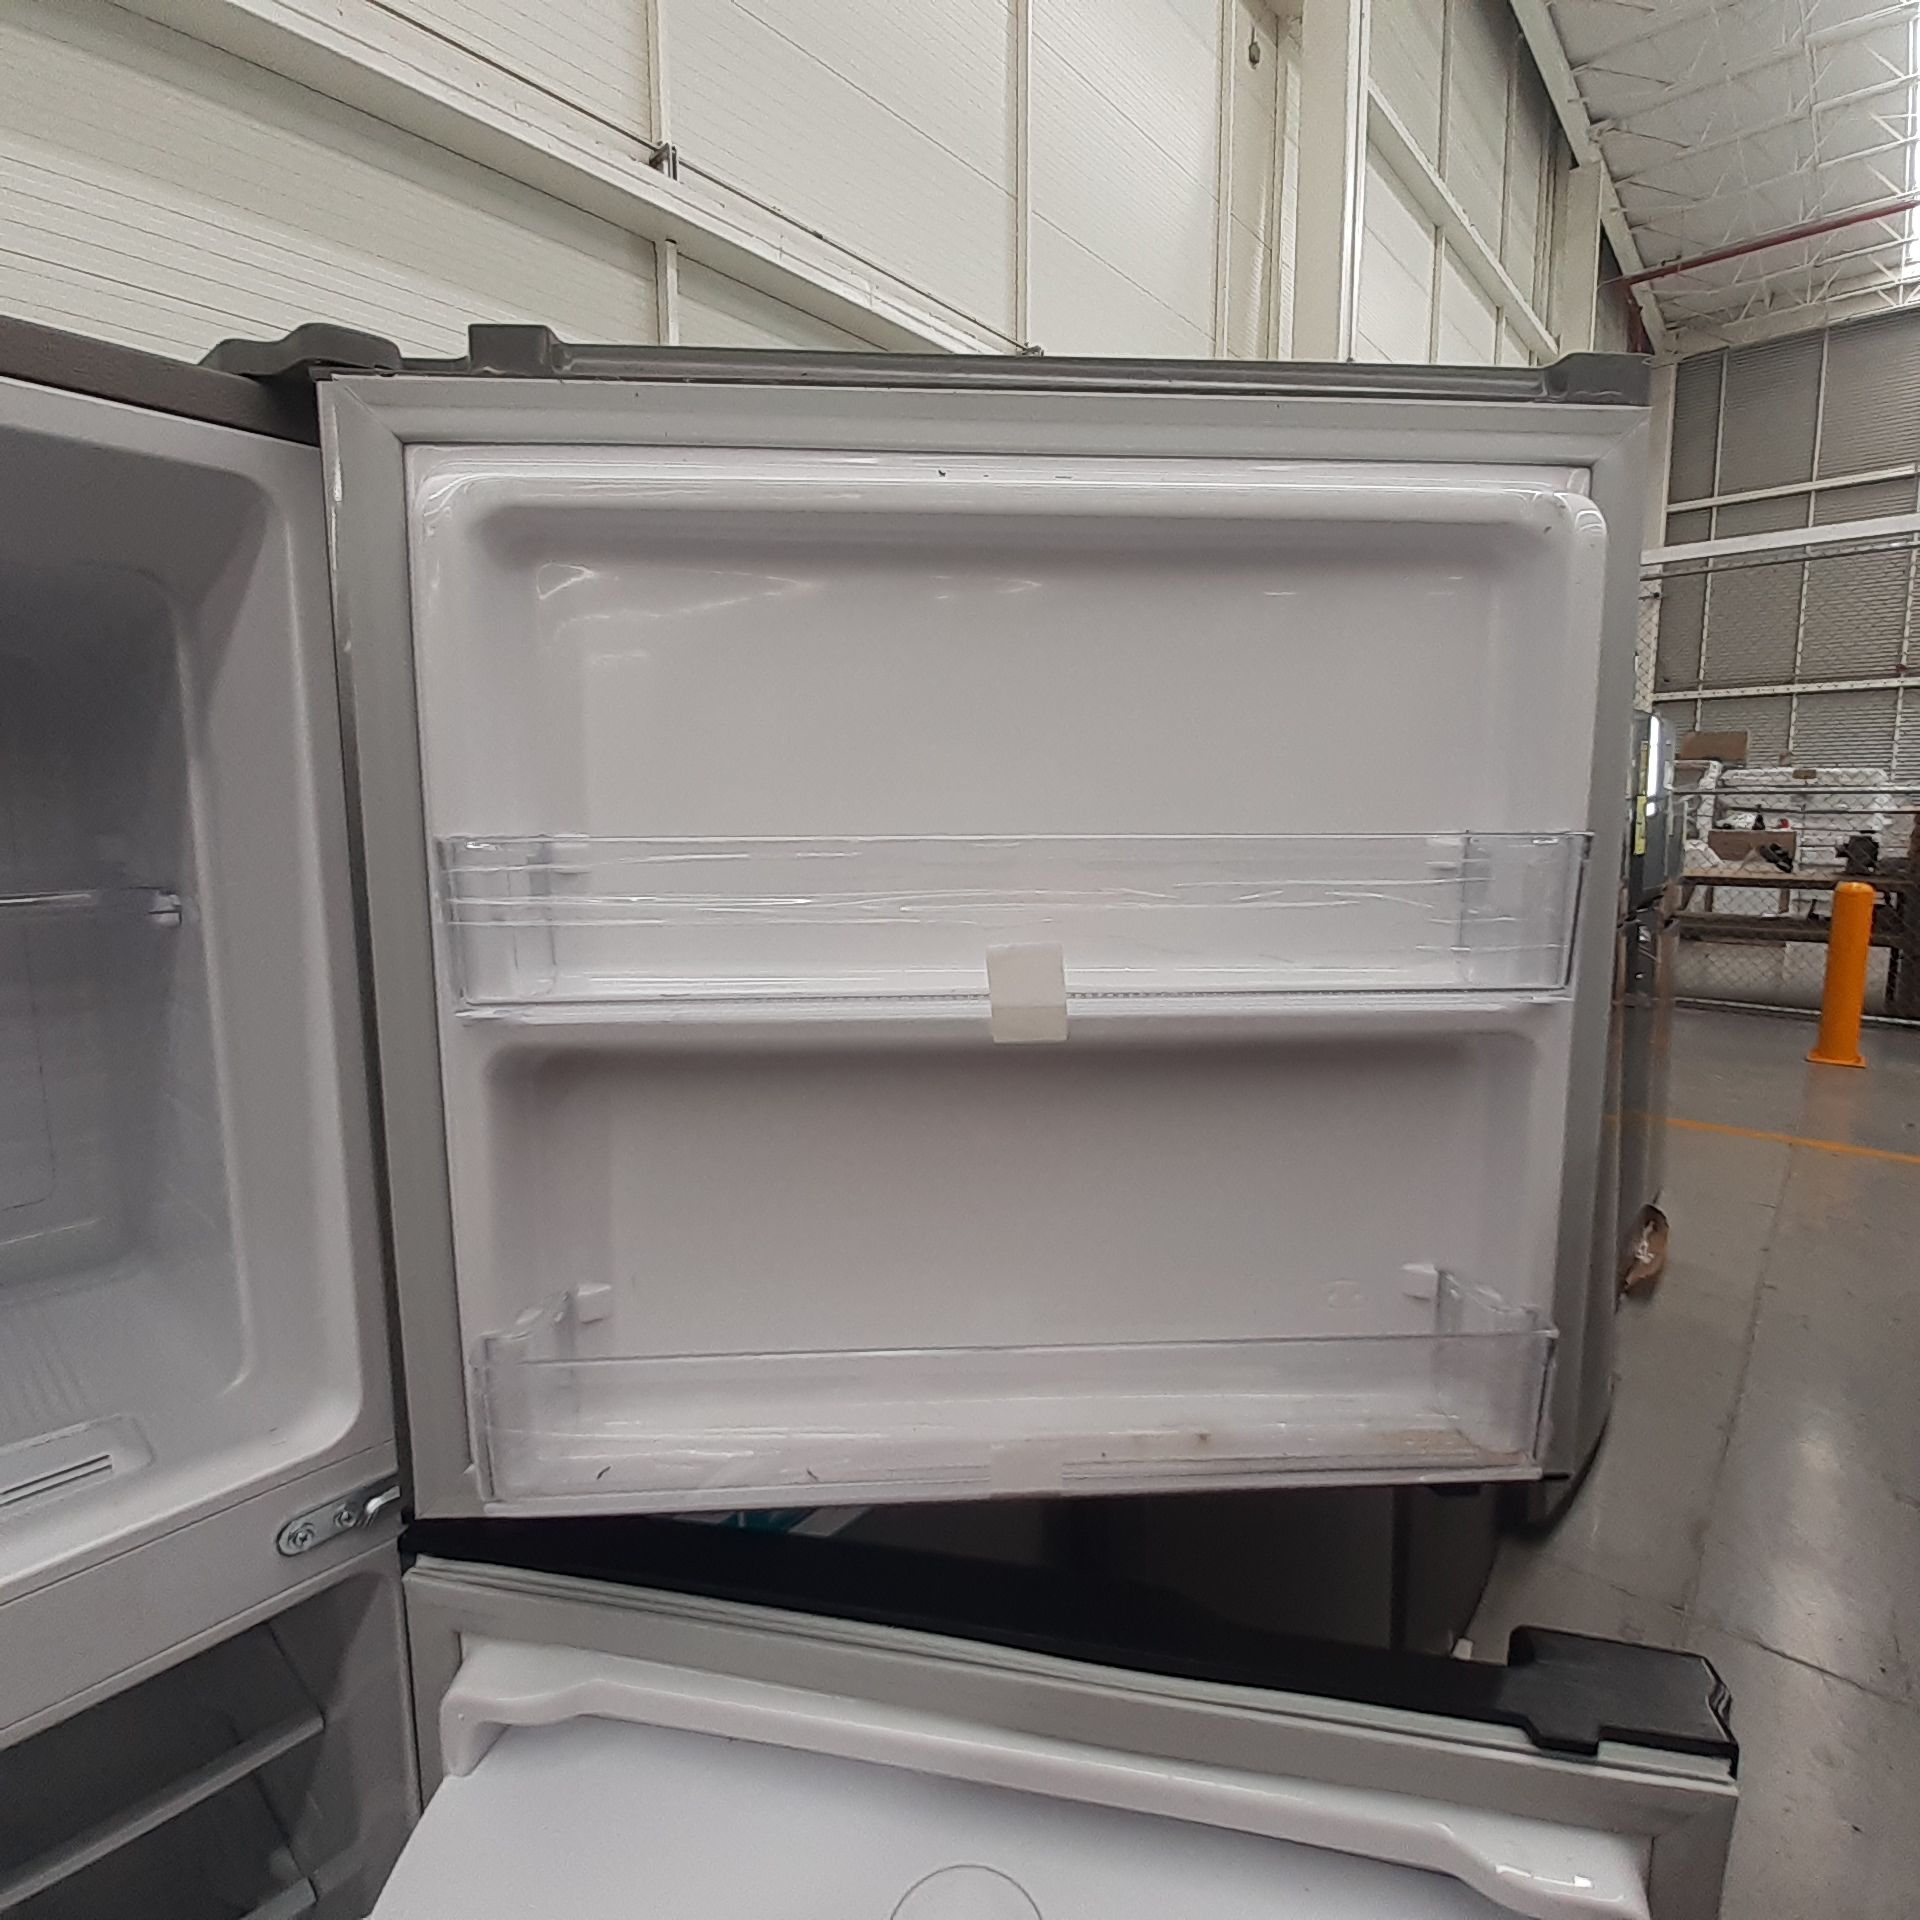 Lote De 2 Refrigeradores: 1 Refrigerador Con Dispensador De Agua Marca Samsung, 1 Refrigerador Marca - Image 11 of 18